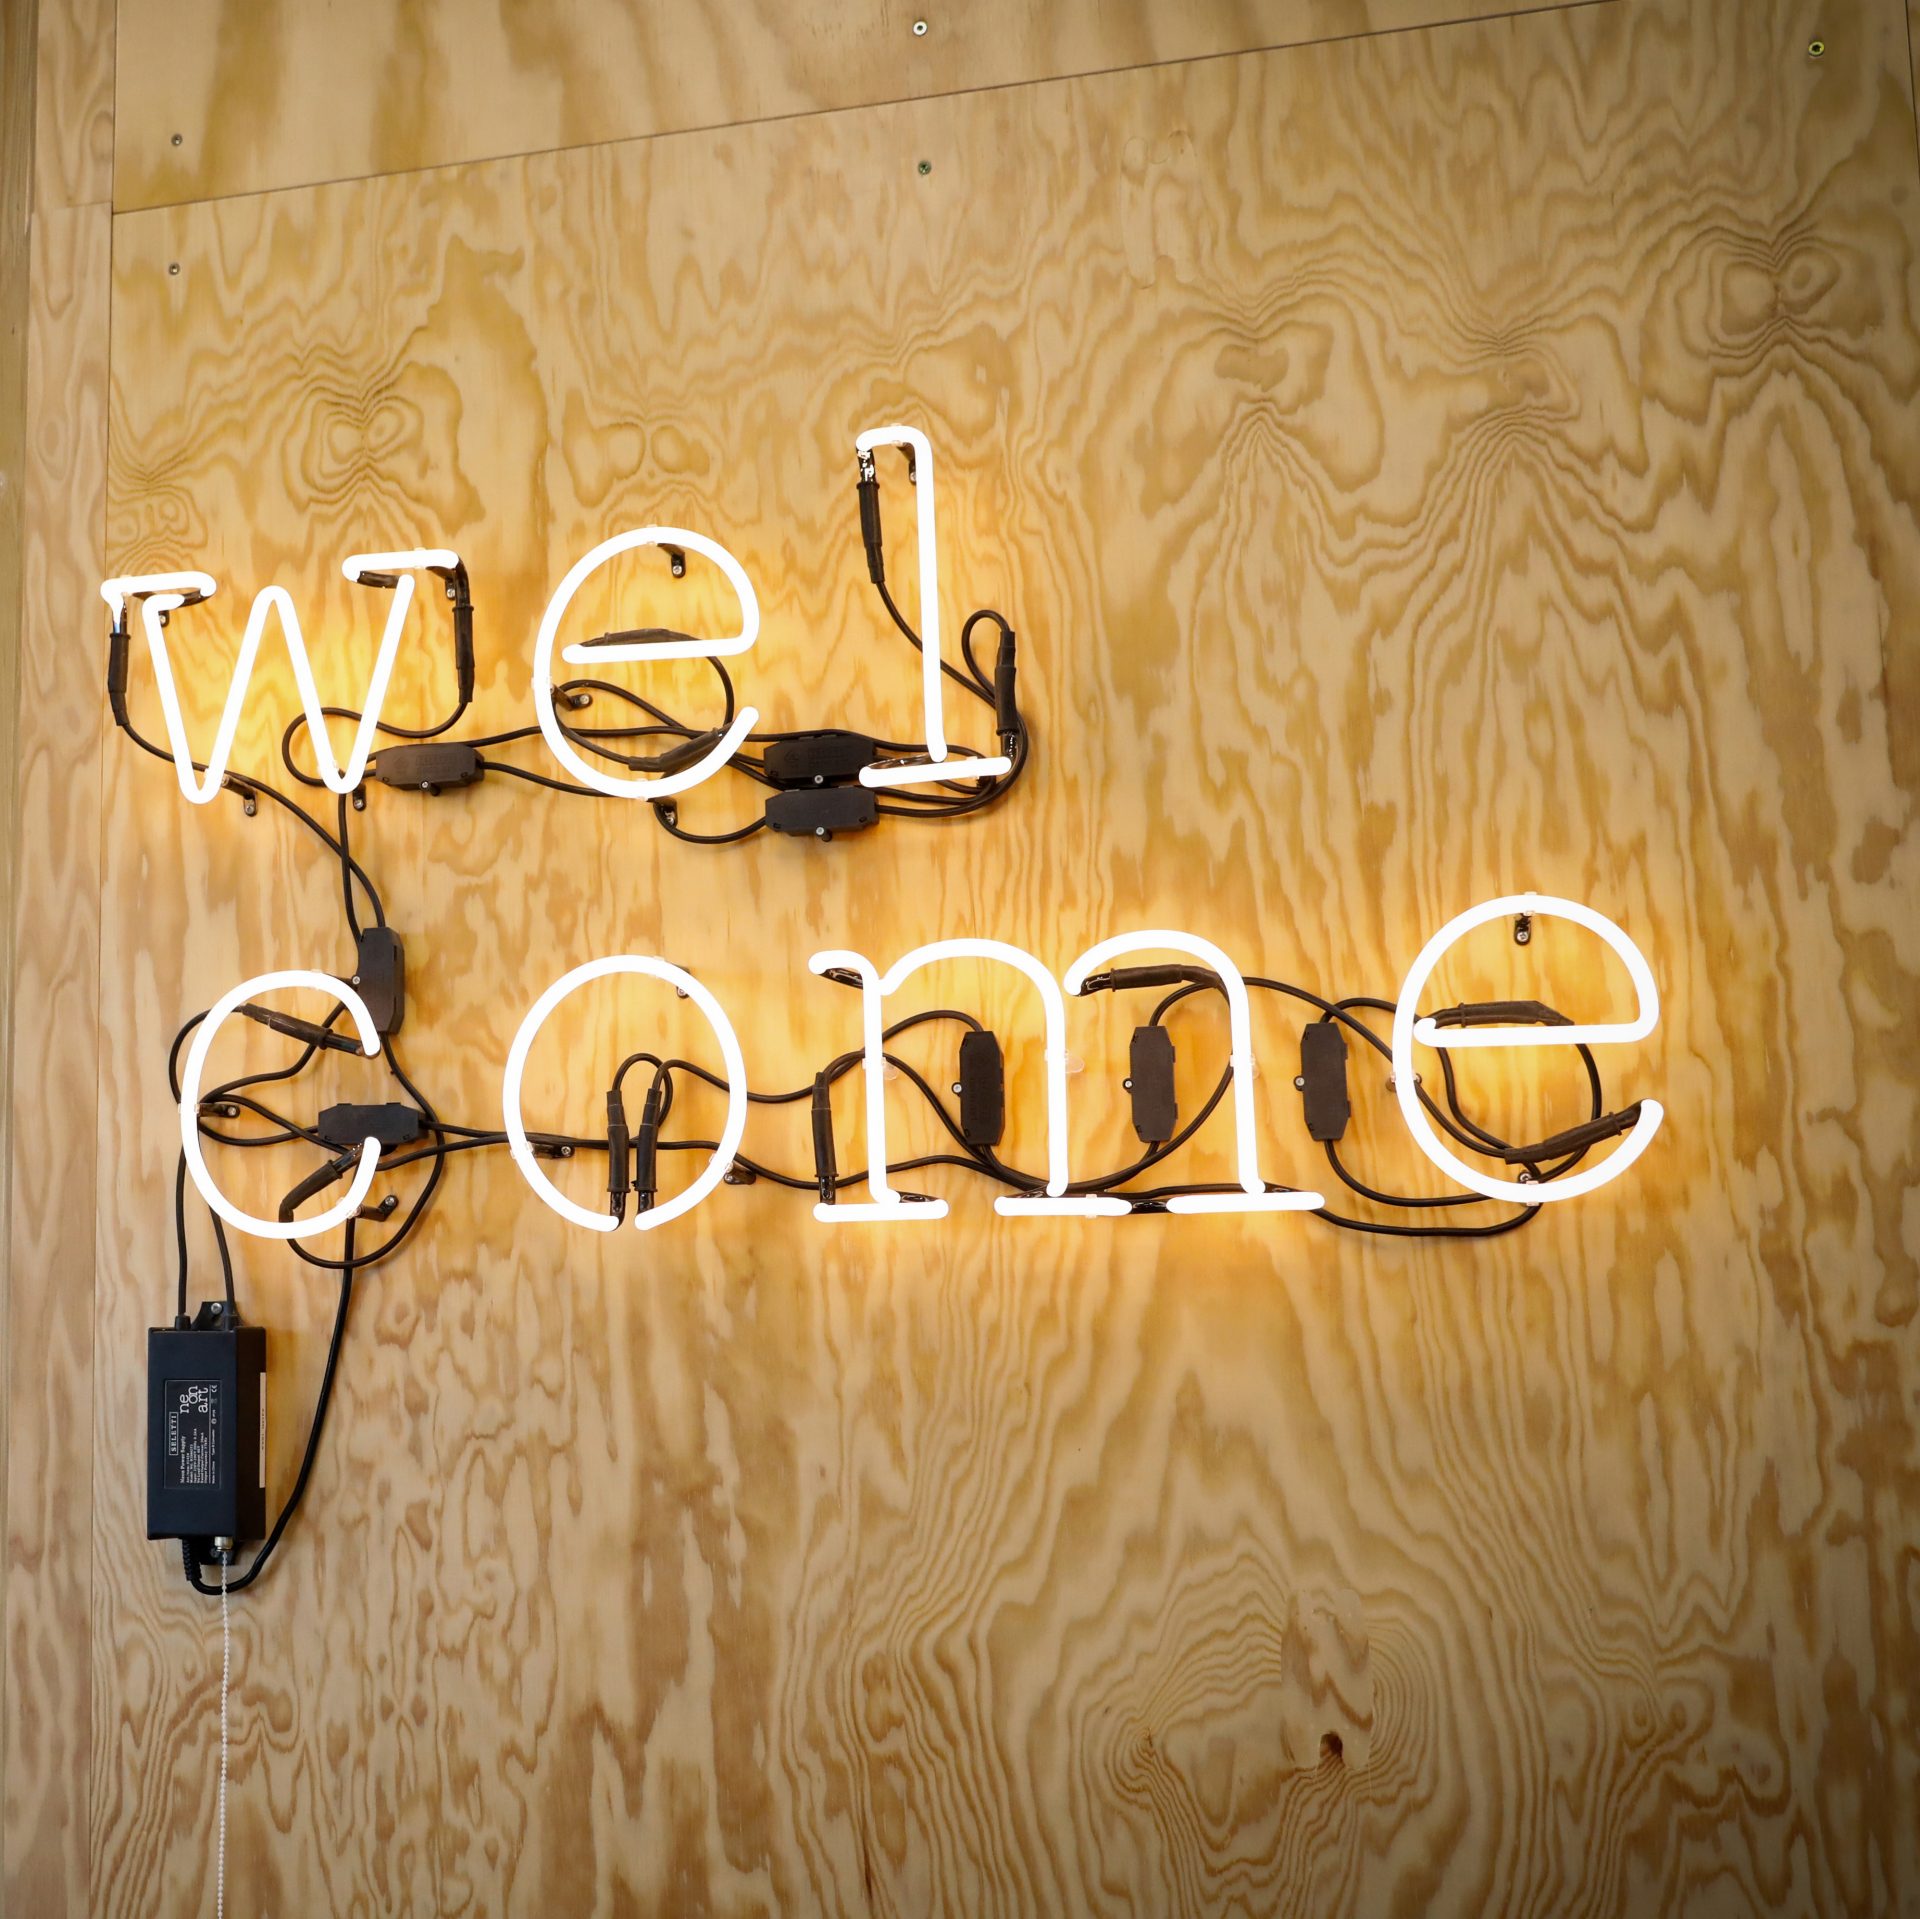 Das Bild zeigt einen "Welcome" Neon Schriftzug.